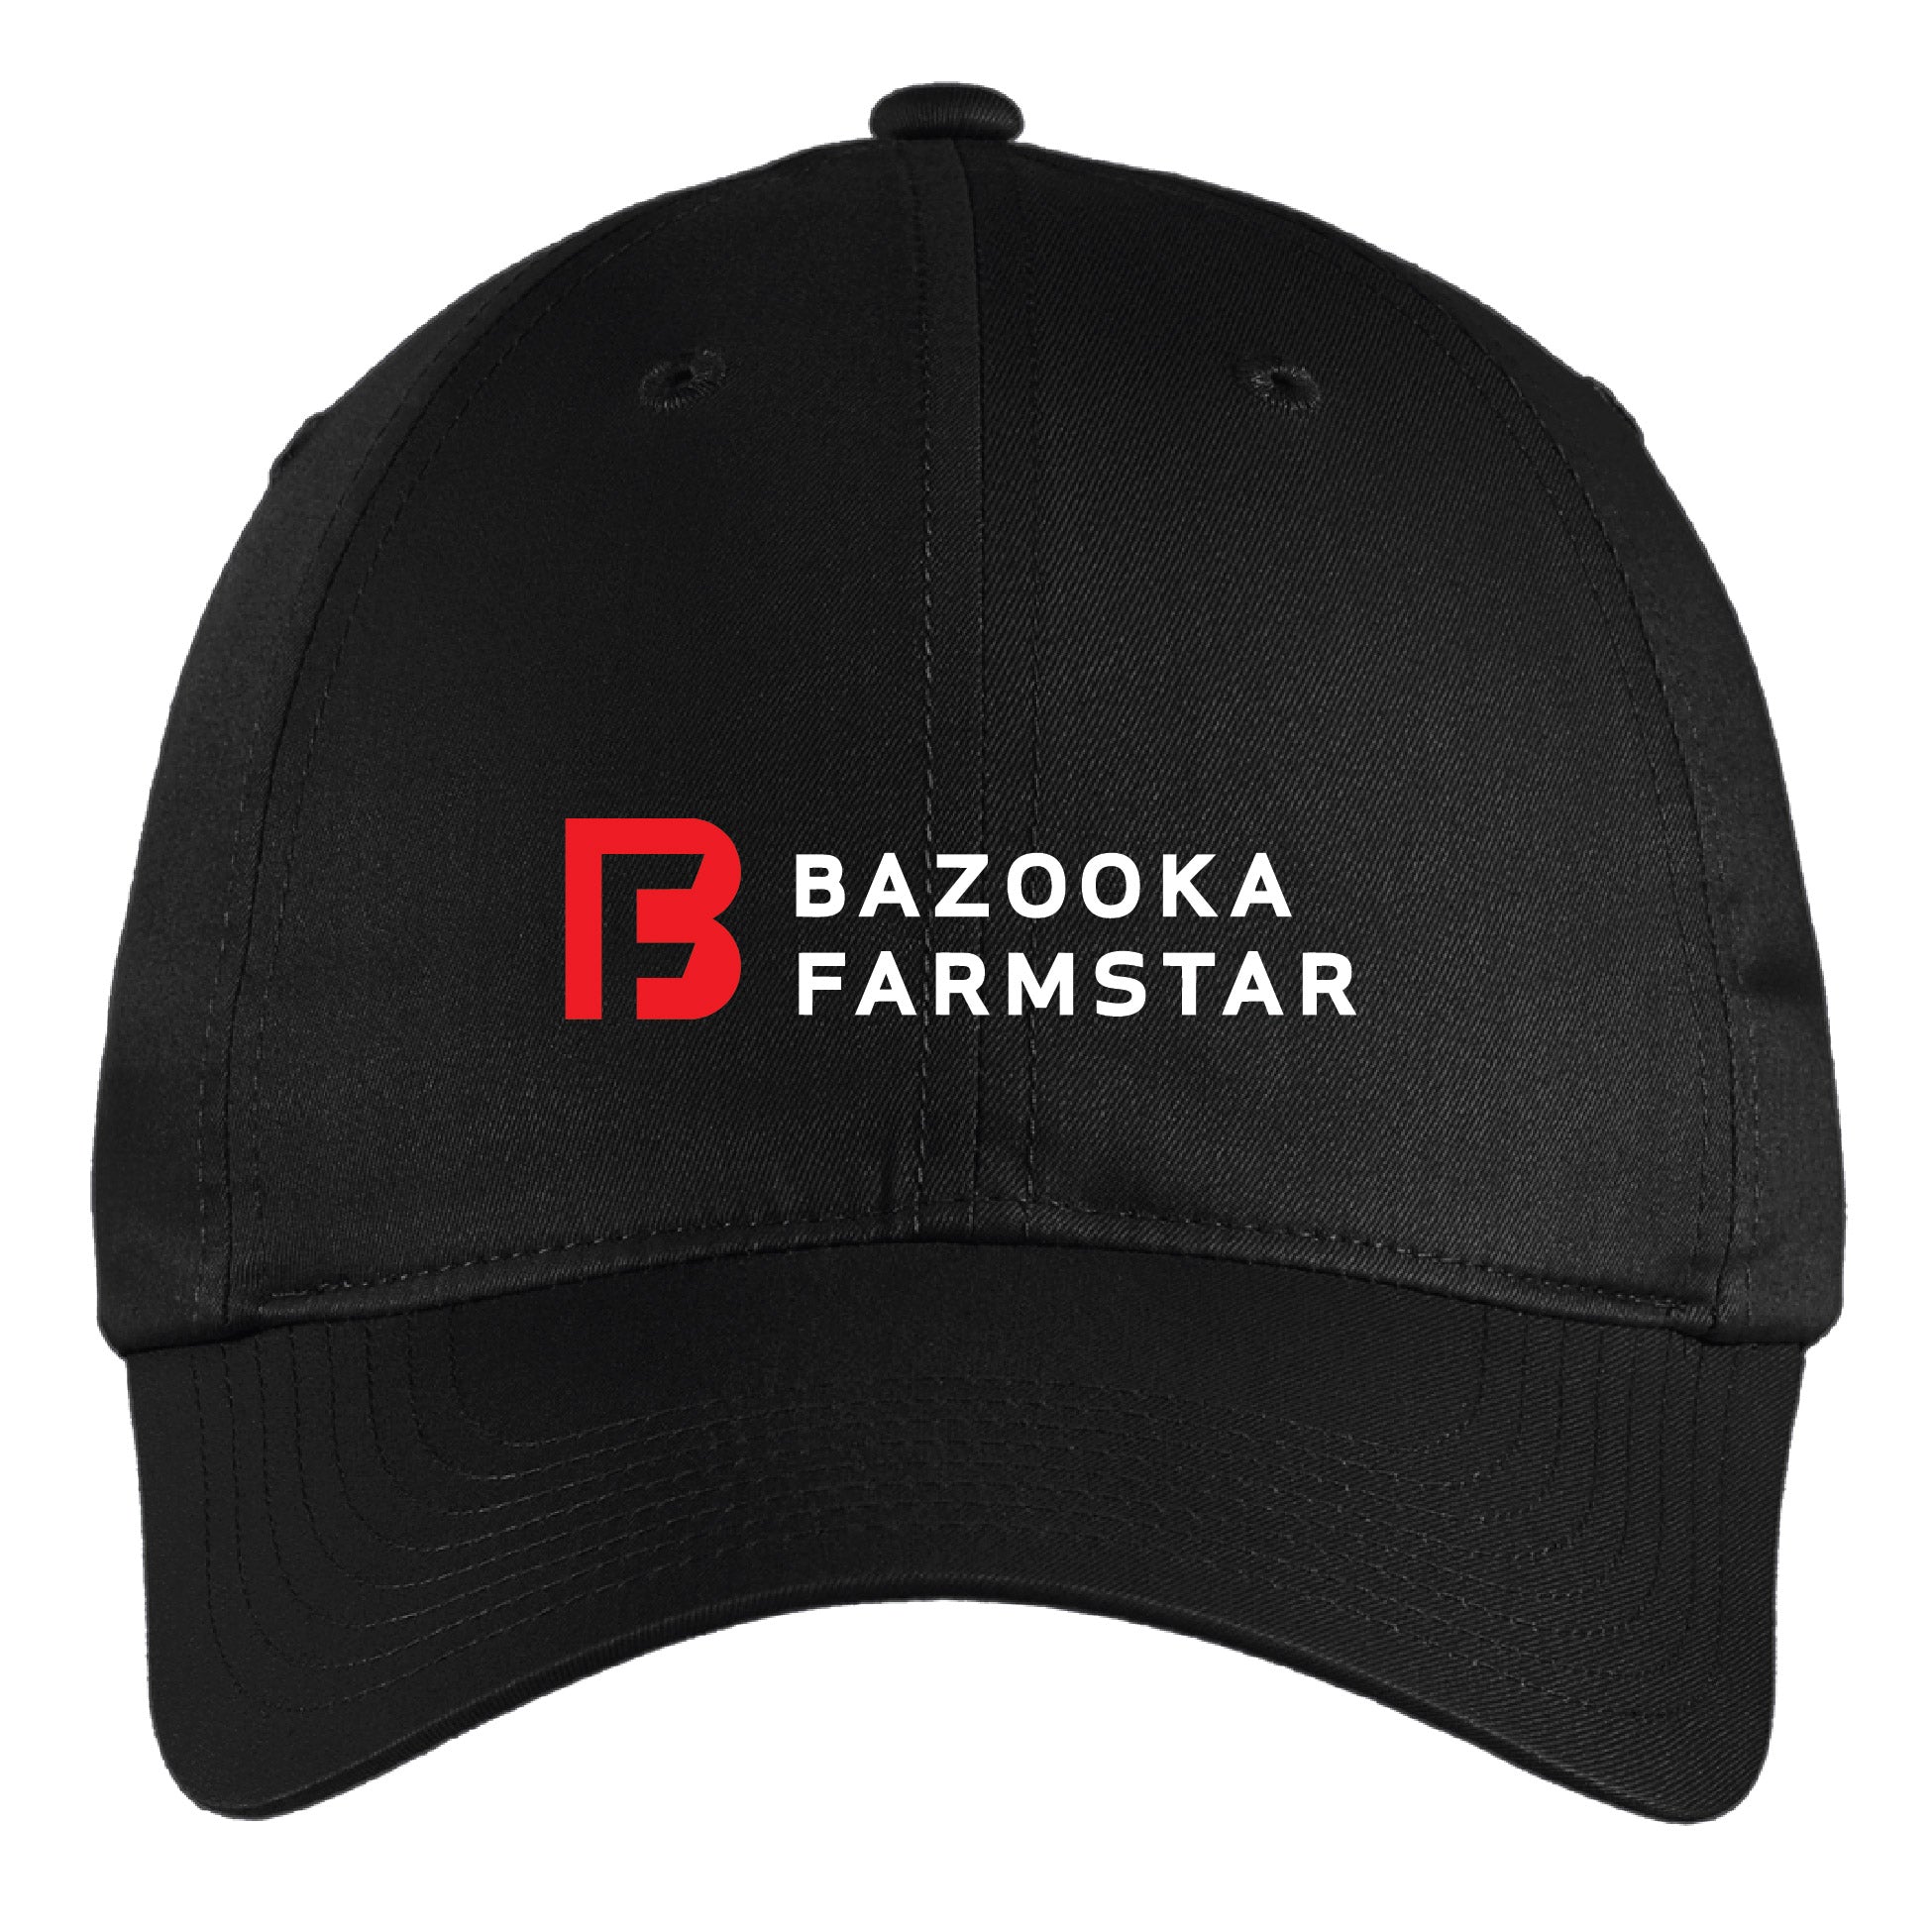 Bazooka Farmstar Nike Hat